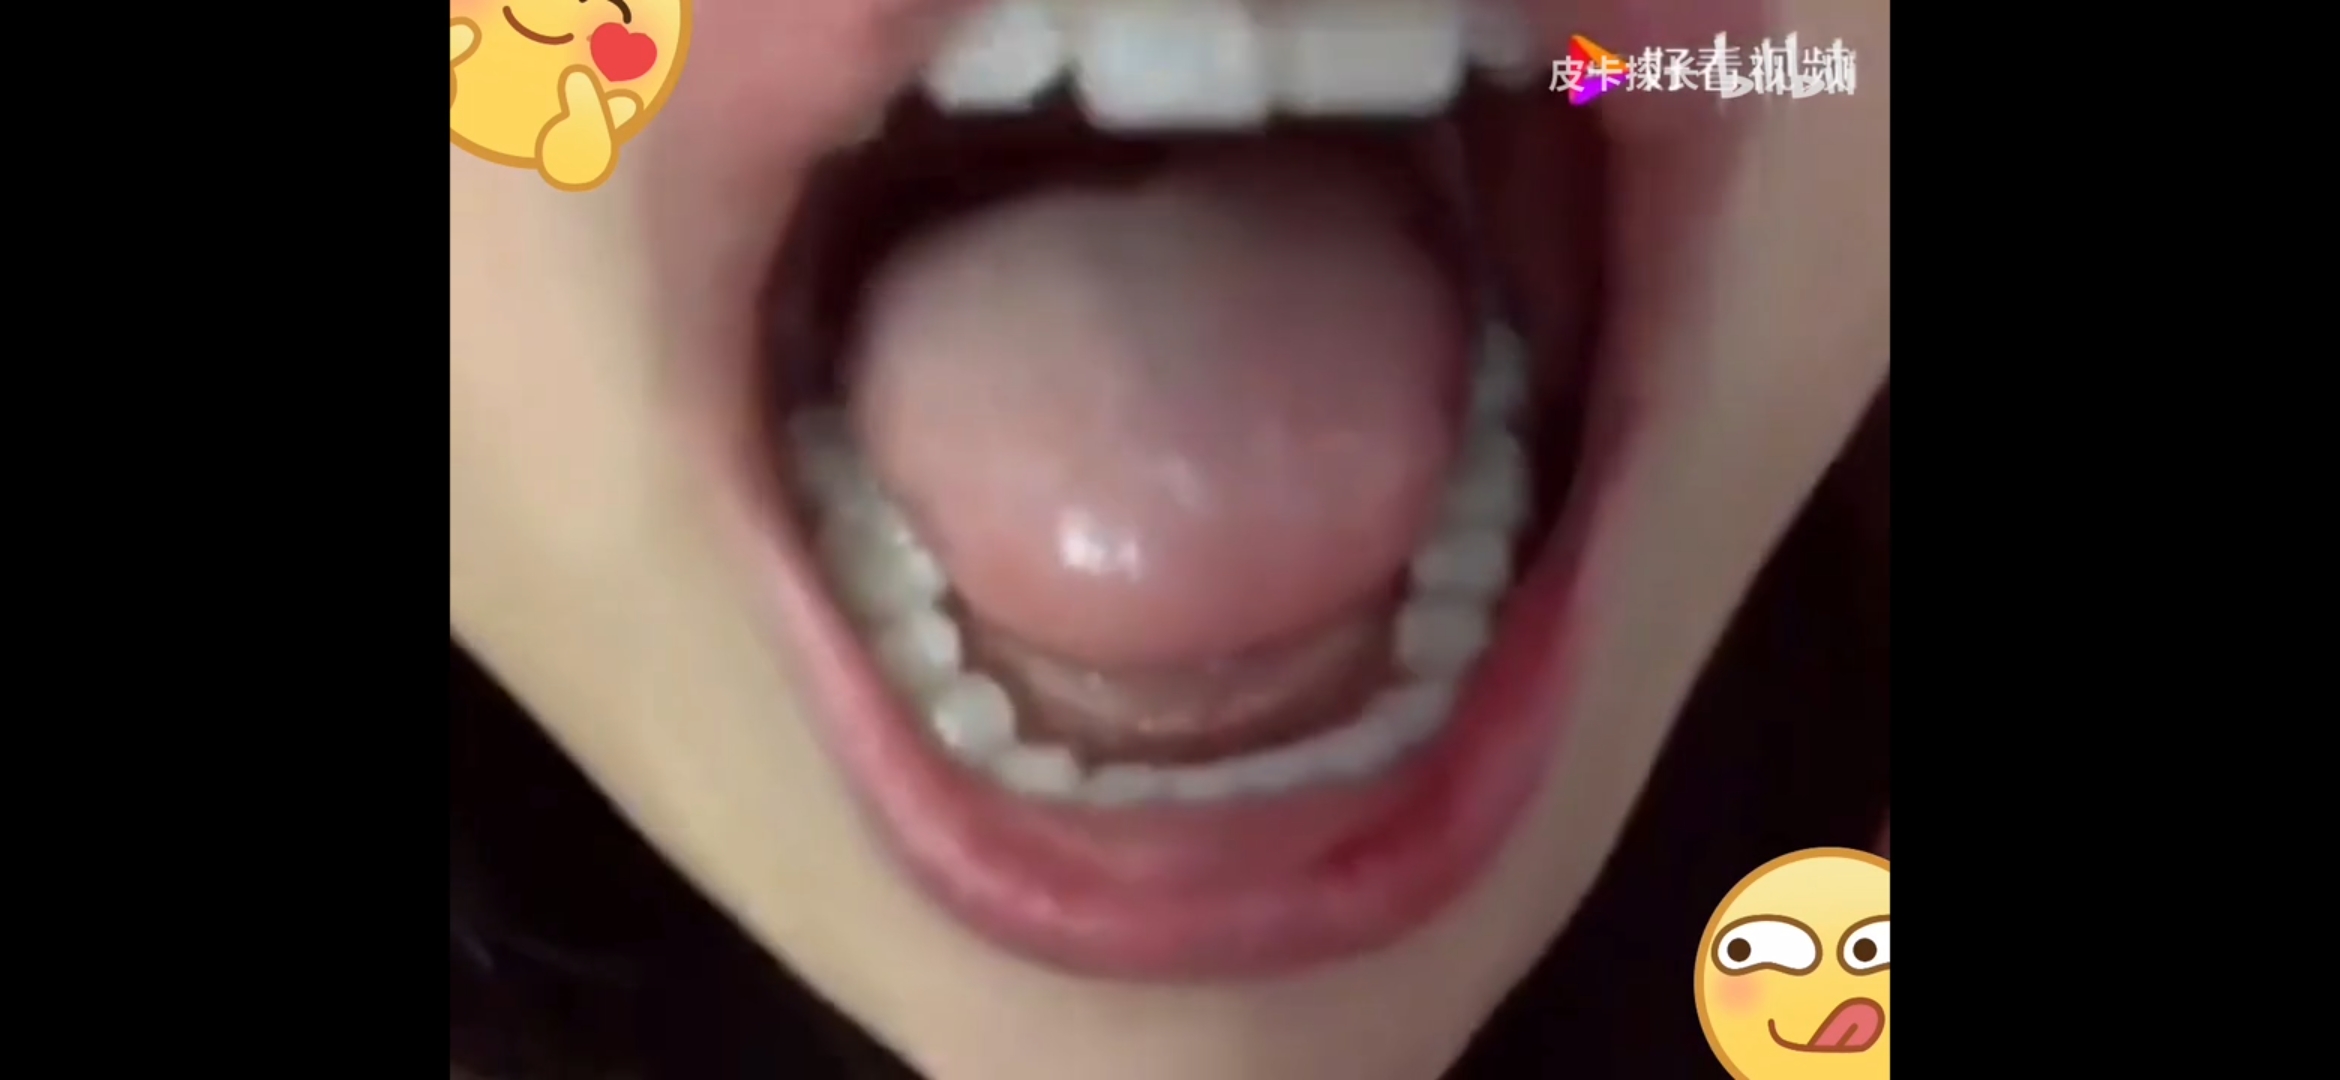 Chinese uvula2